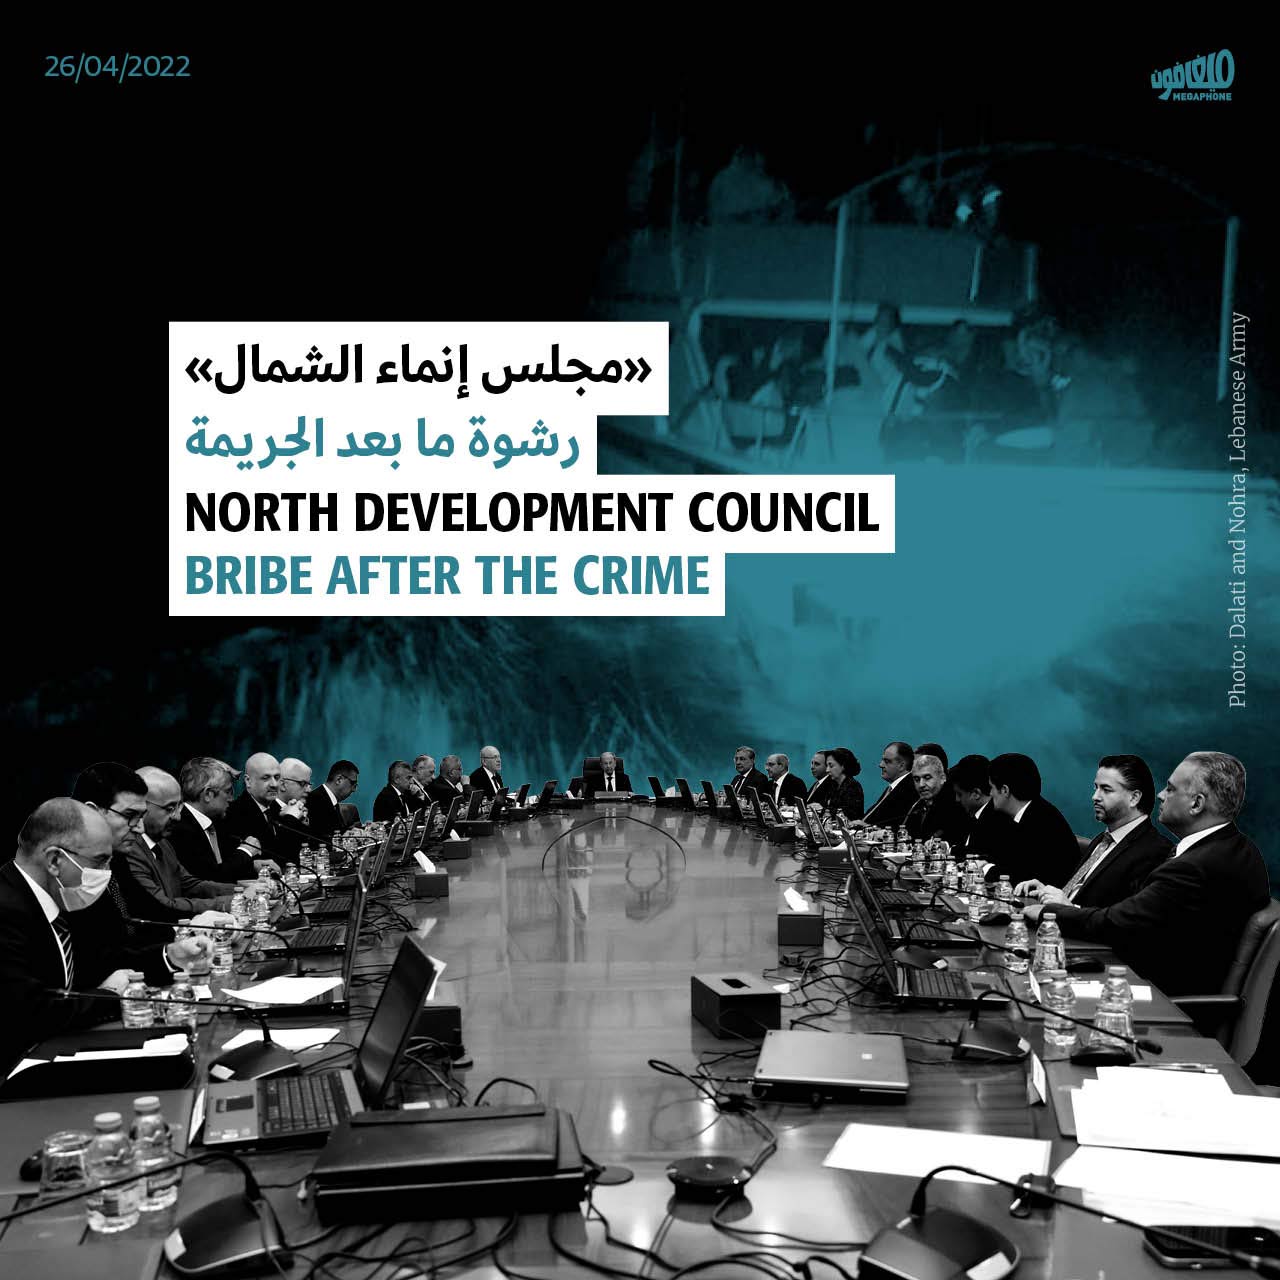 «مجلس إنماء الشمال»: رشوة ما بعد الجريمة